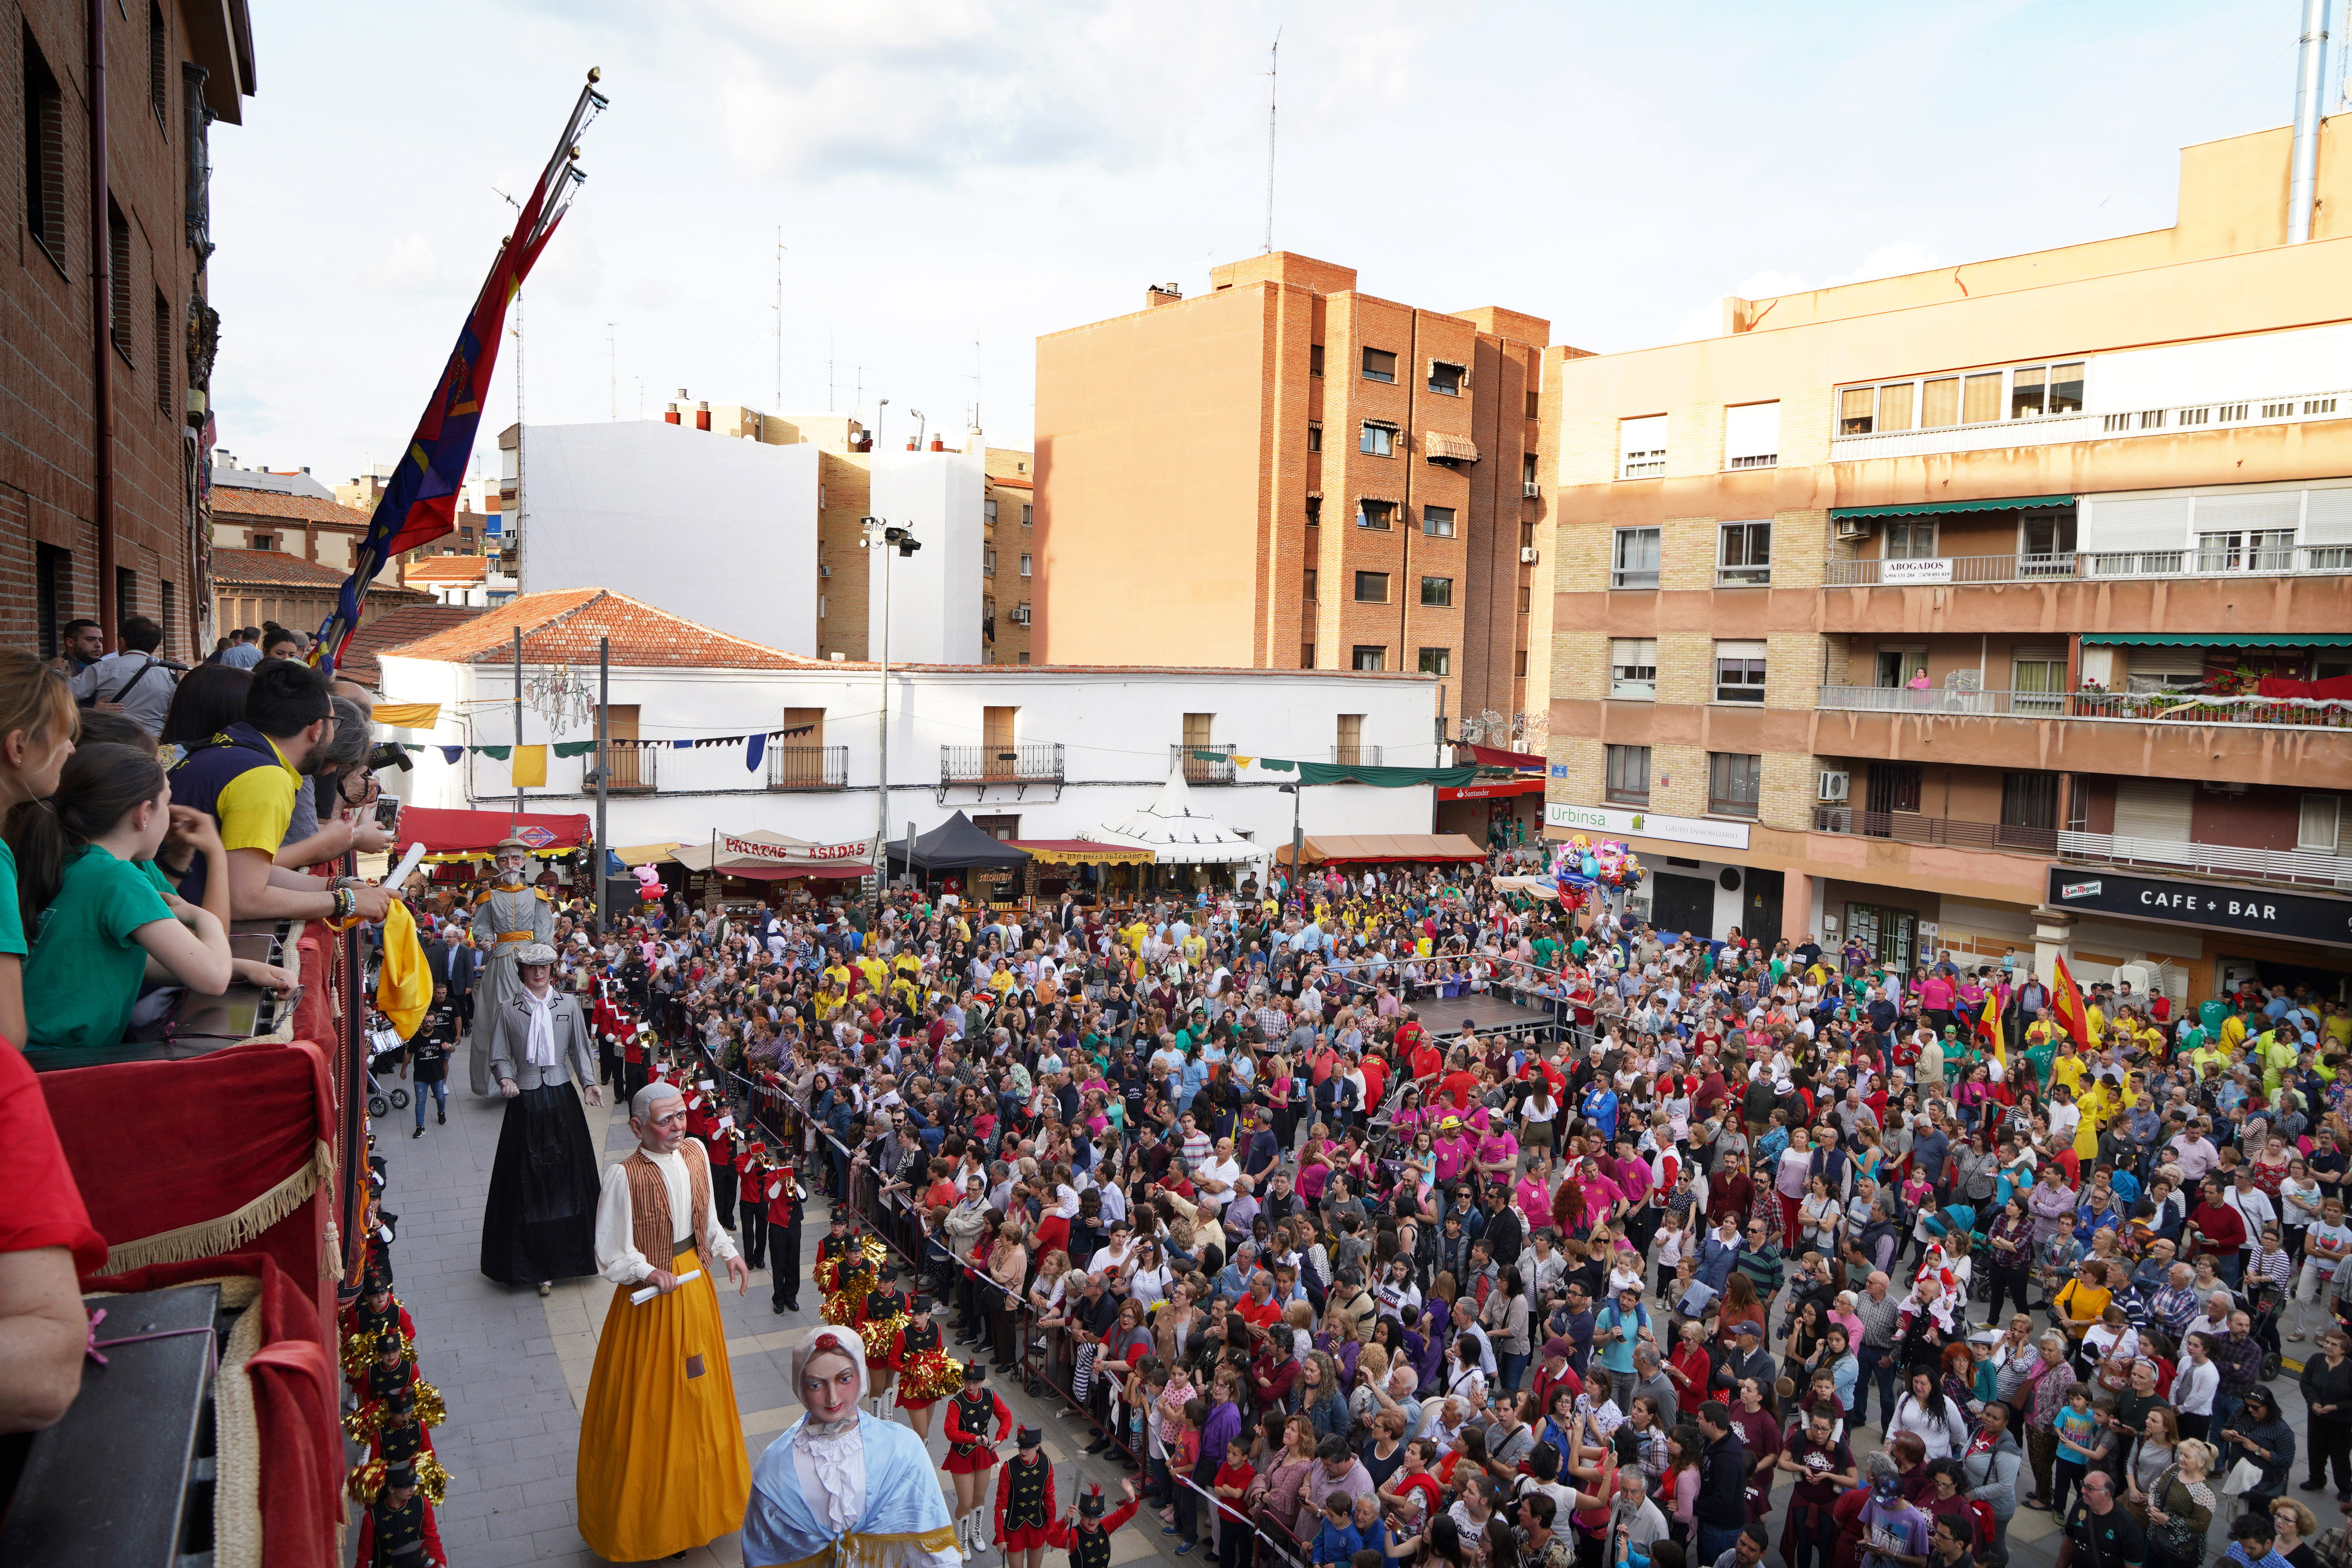 Las Fiestas del 2 de Mayo mostoleño de 2019 se cierran con aforo completo en todos los actos organizados